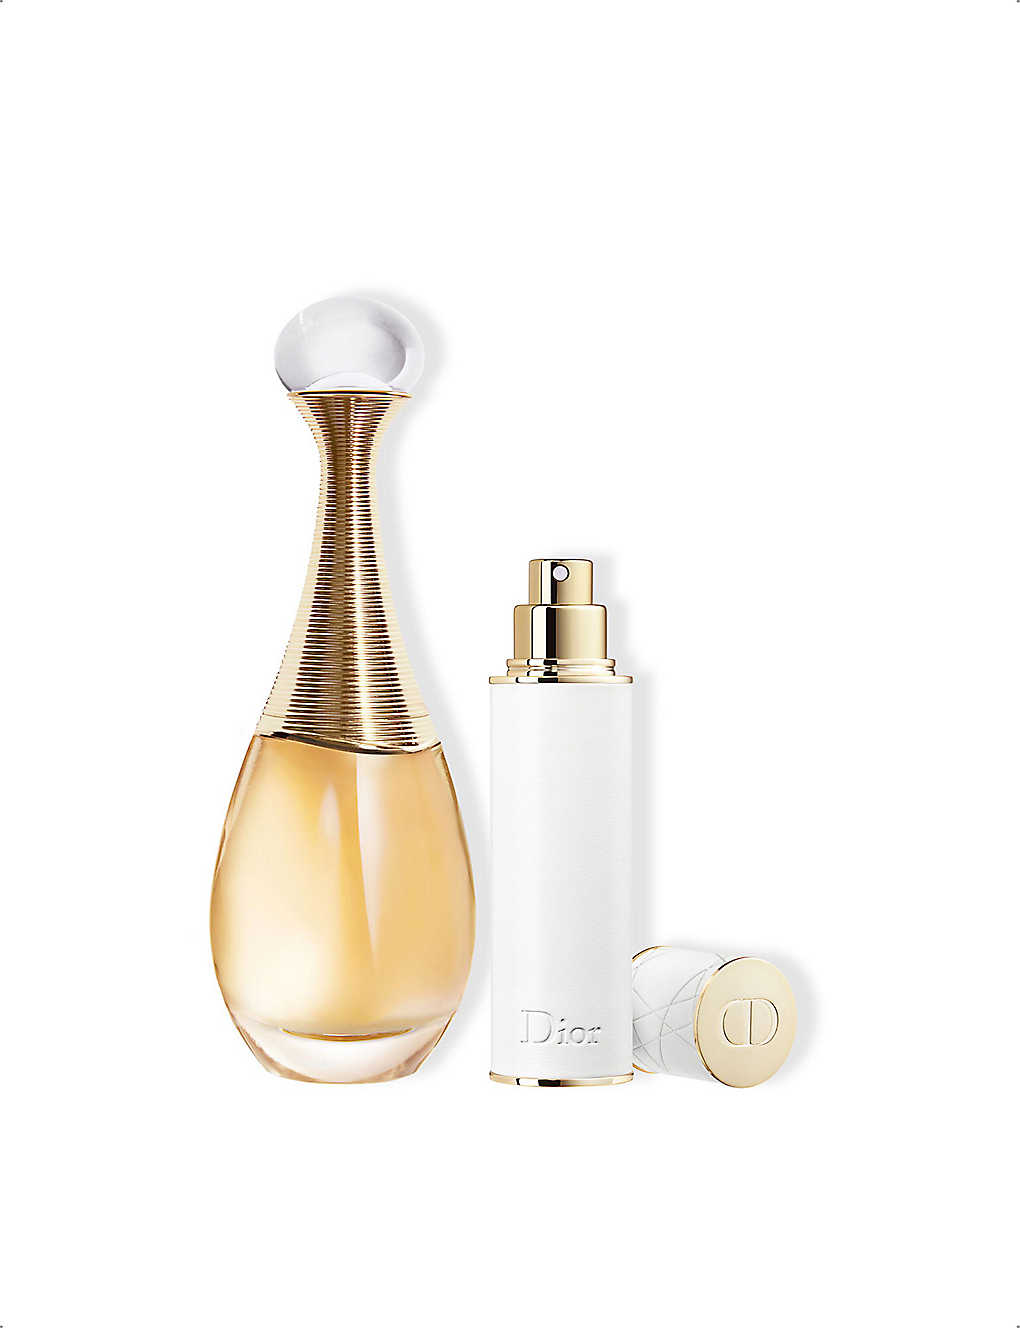 Dior J'adore Limited Edition Eau de Parfum Gift Set